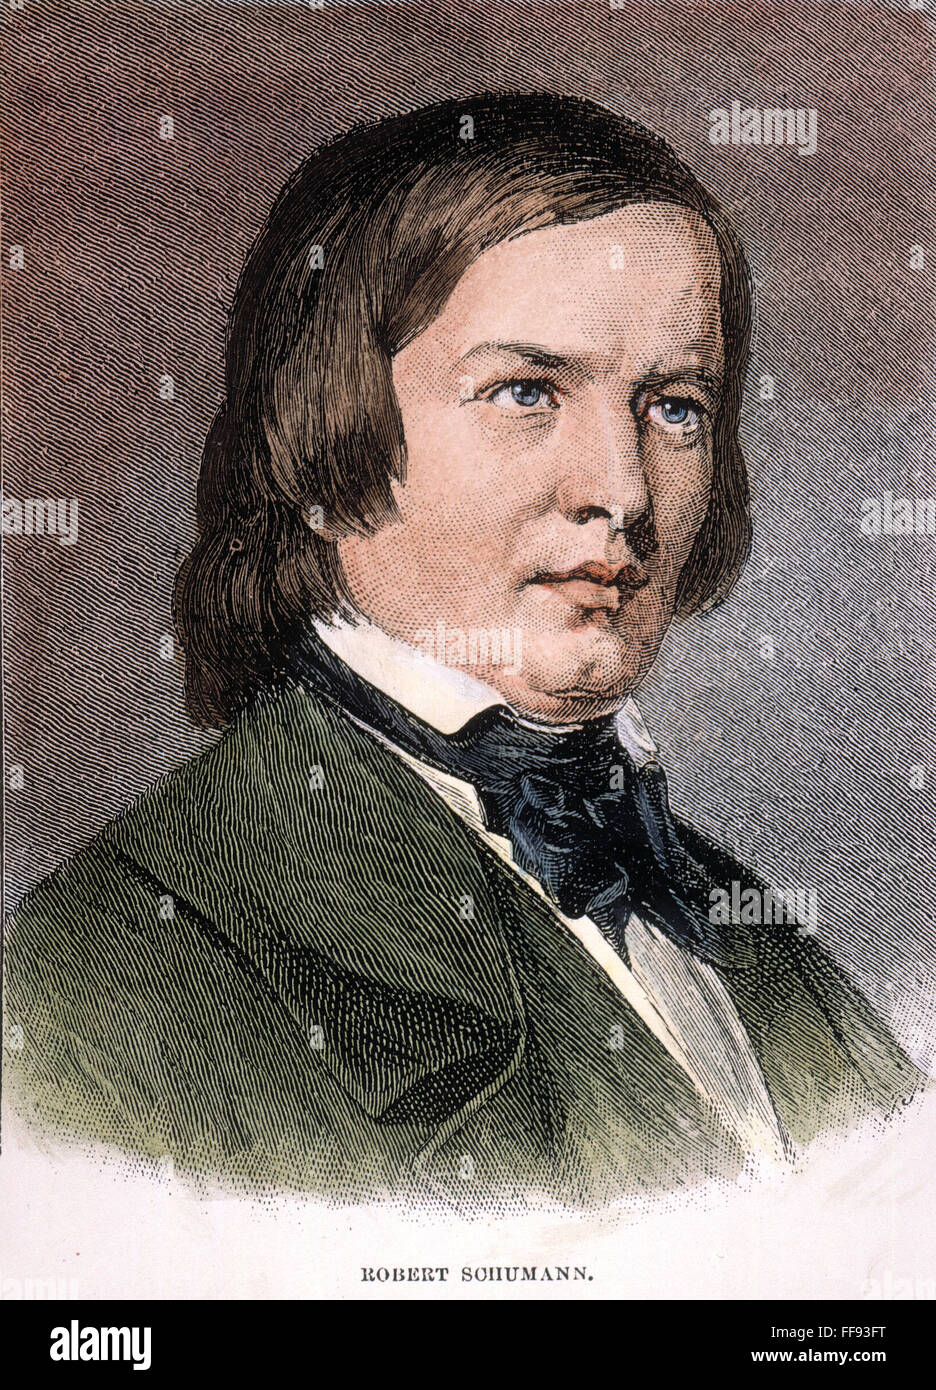 ROBERT SCHUMANN /n(1810-1856). Compositeur allemand. La gravure sur bois, cuisine américaine, 19e siècle. Banque D'Images